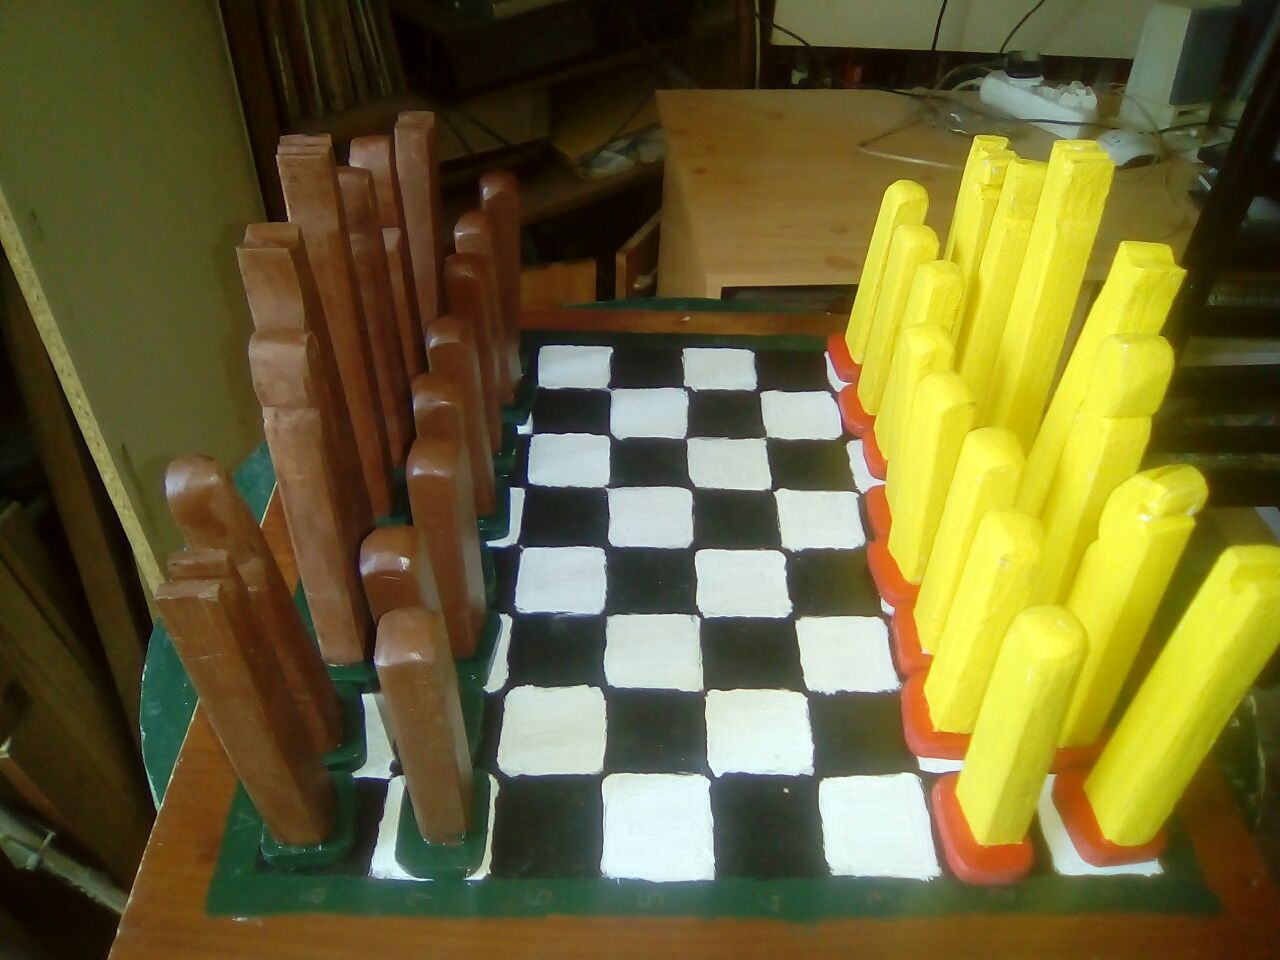 Jogo de peças de xadrez artesanal em madeira